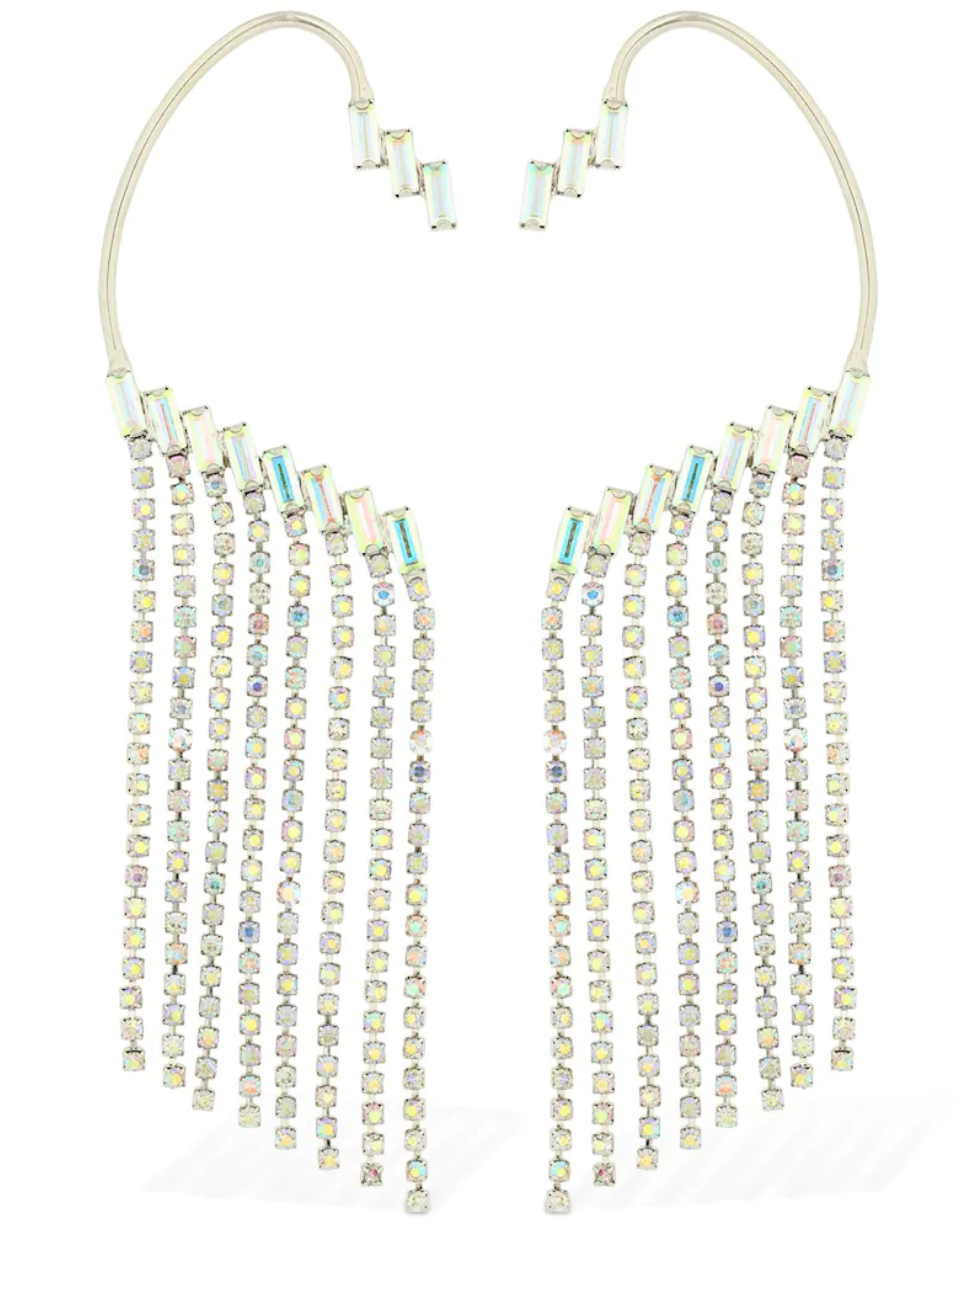 la collab tra il brand di taiwan yun yun sun e la piattaforma shopping online lvr porta raggi di luce nel tuo guardaroba con orecchini e collane di cristalli